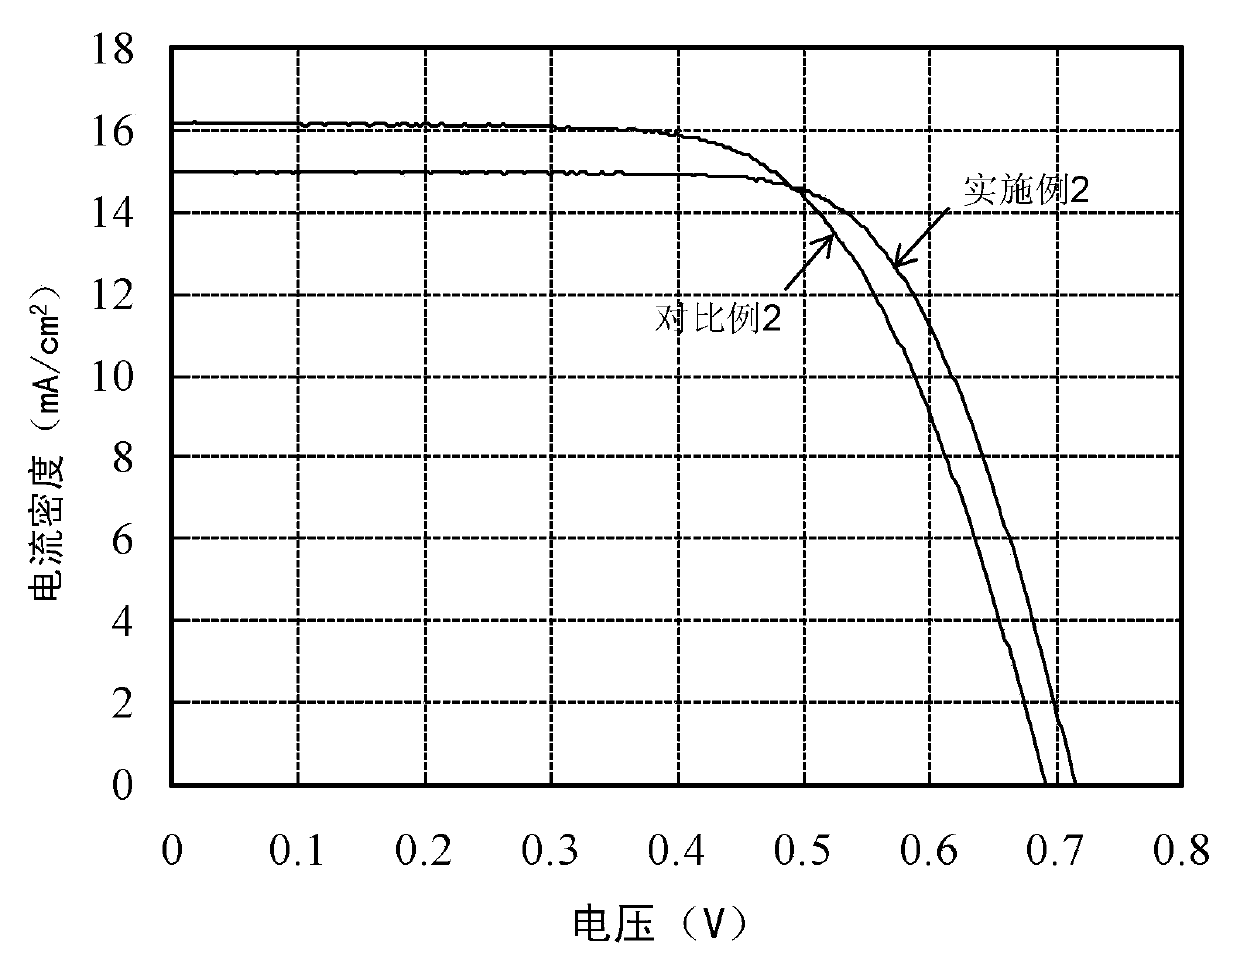 Method for preparing titanium dioxide photo-anode of DSSC (Dye-Sensitized Solar Cell)